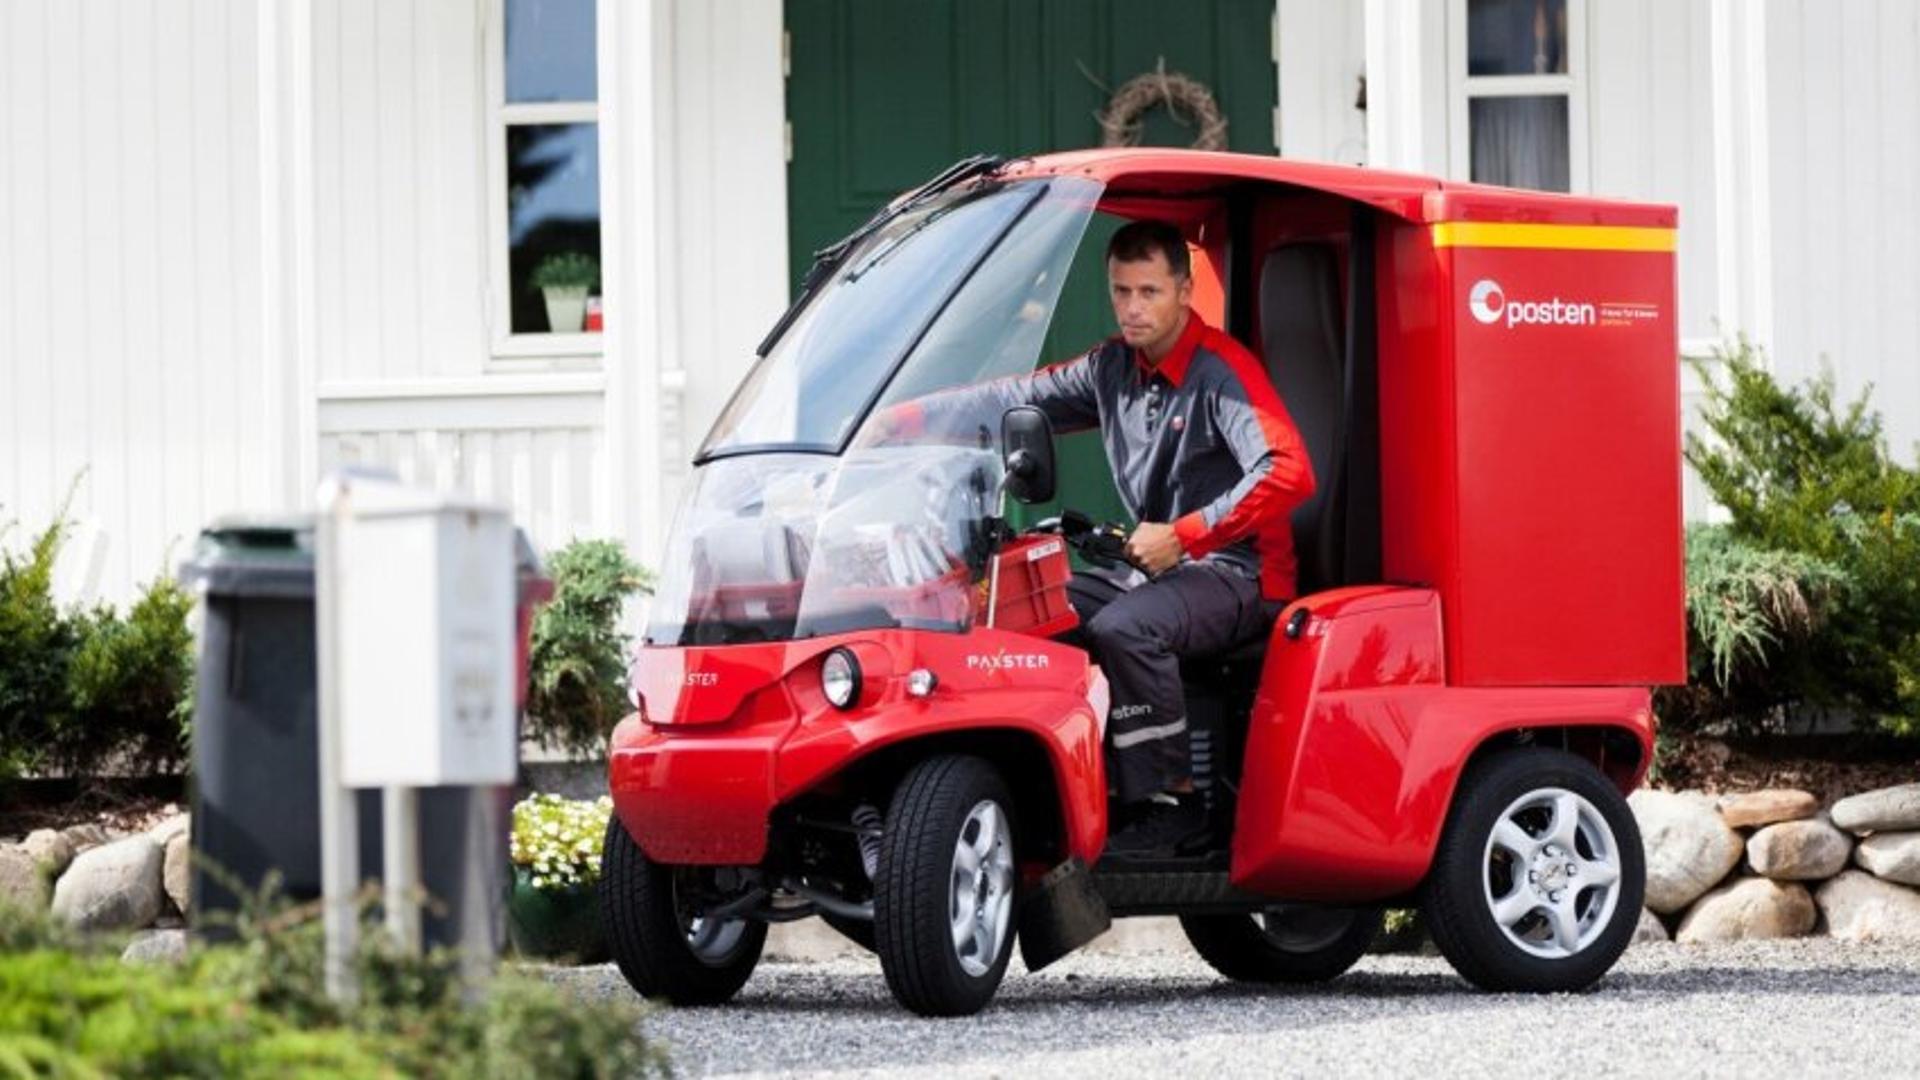 Postman in smart vehicle